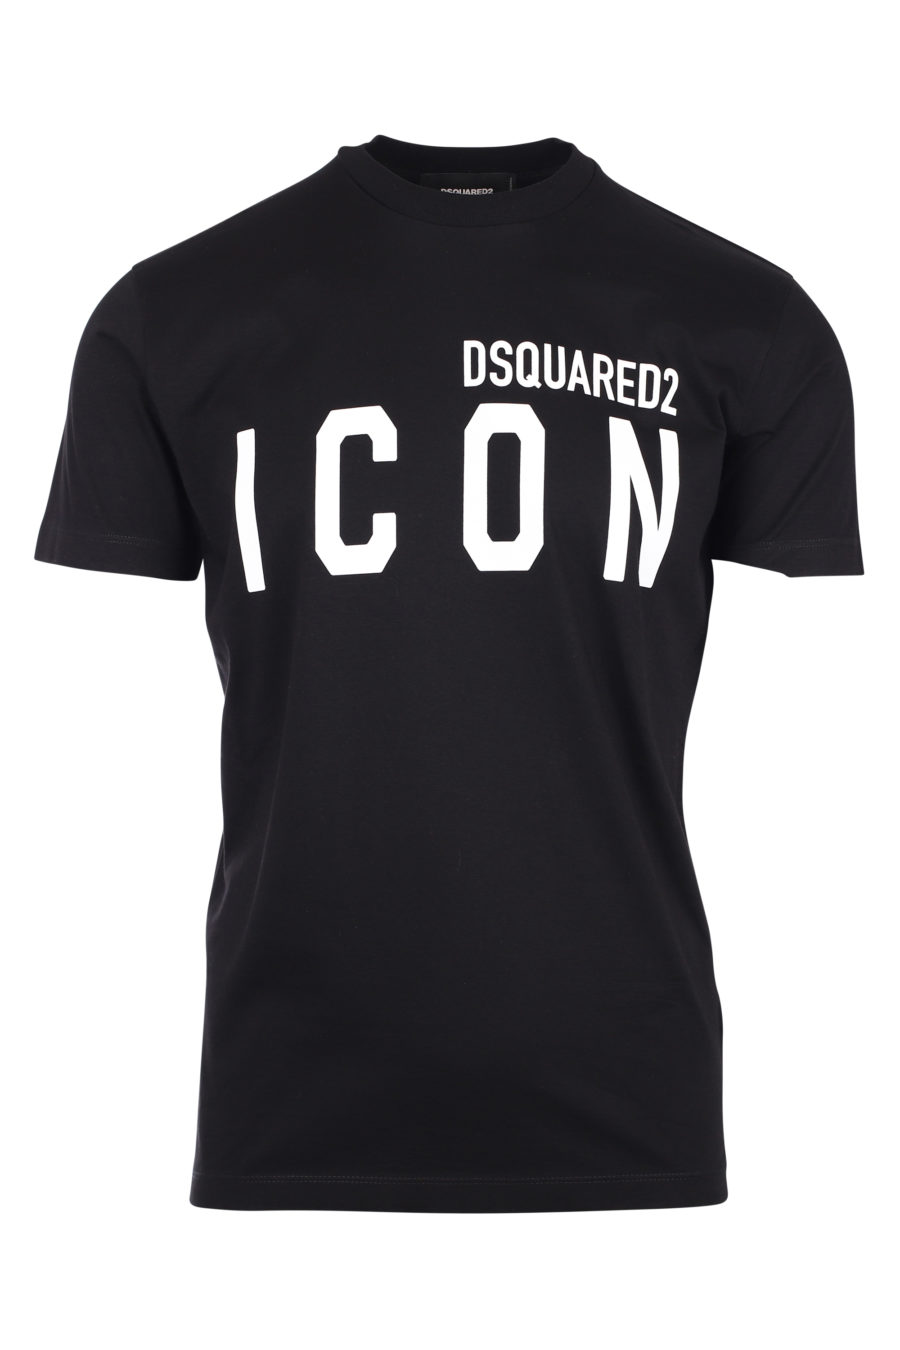 Dsquared2 - Camiseta negra con logo 